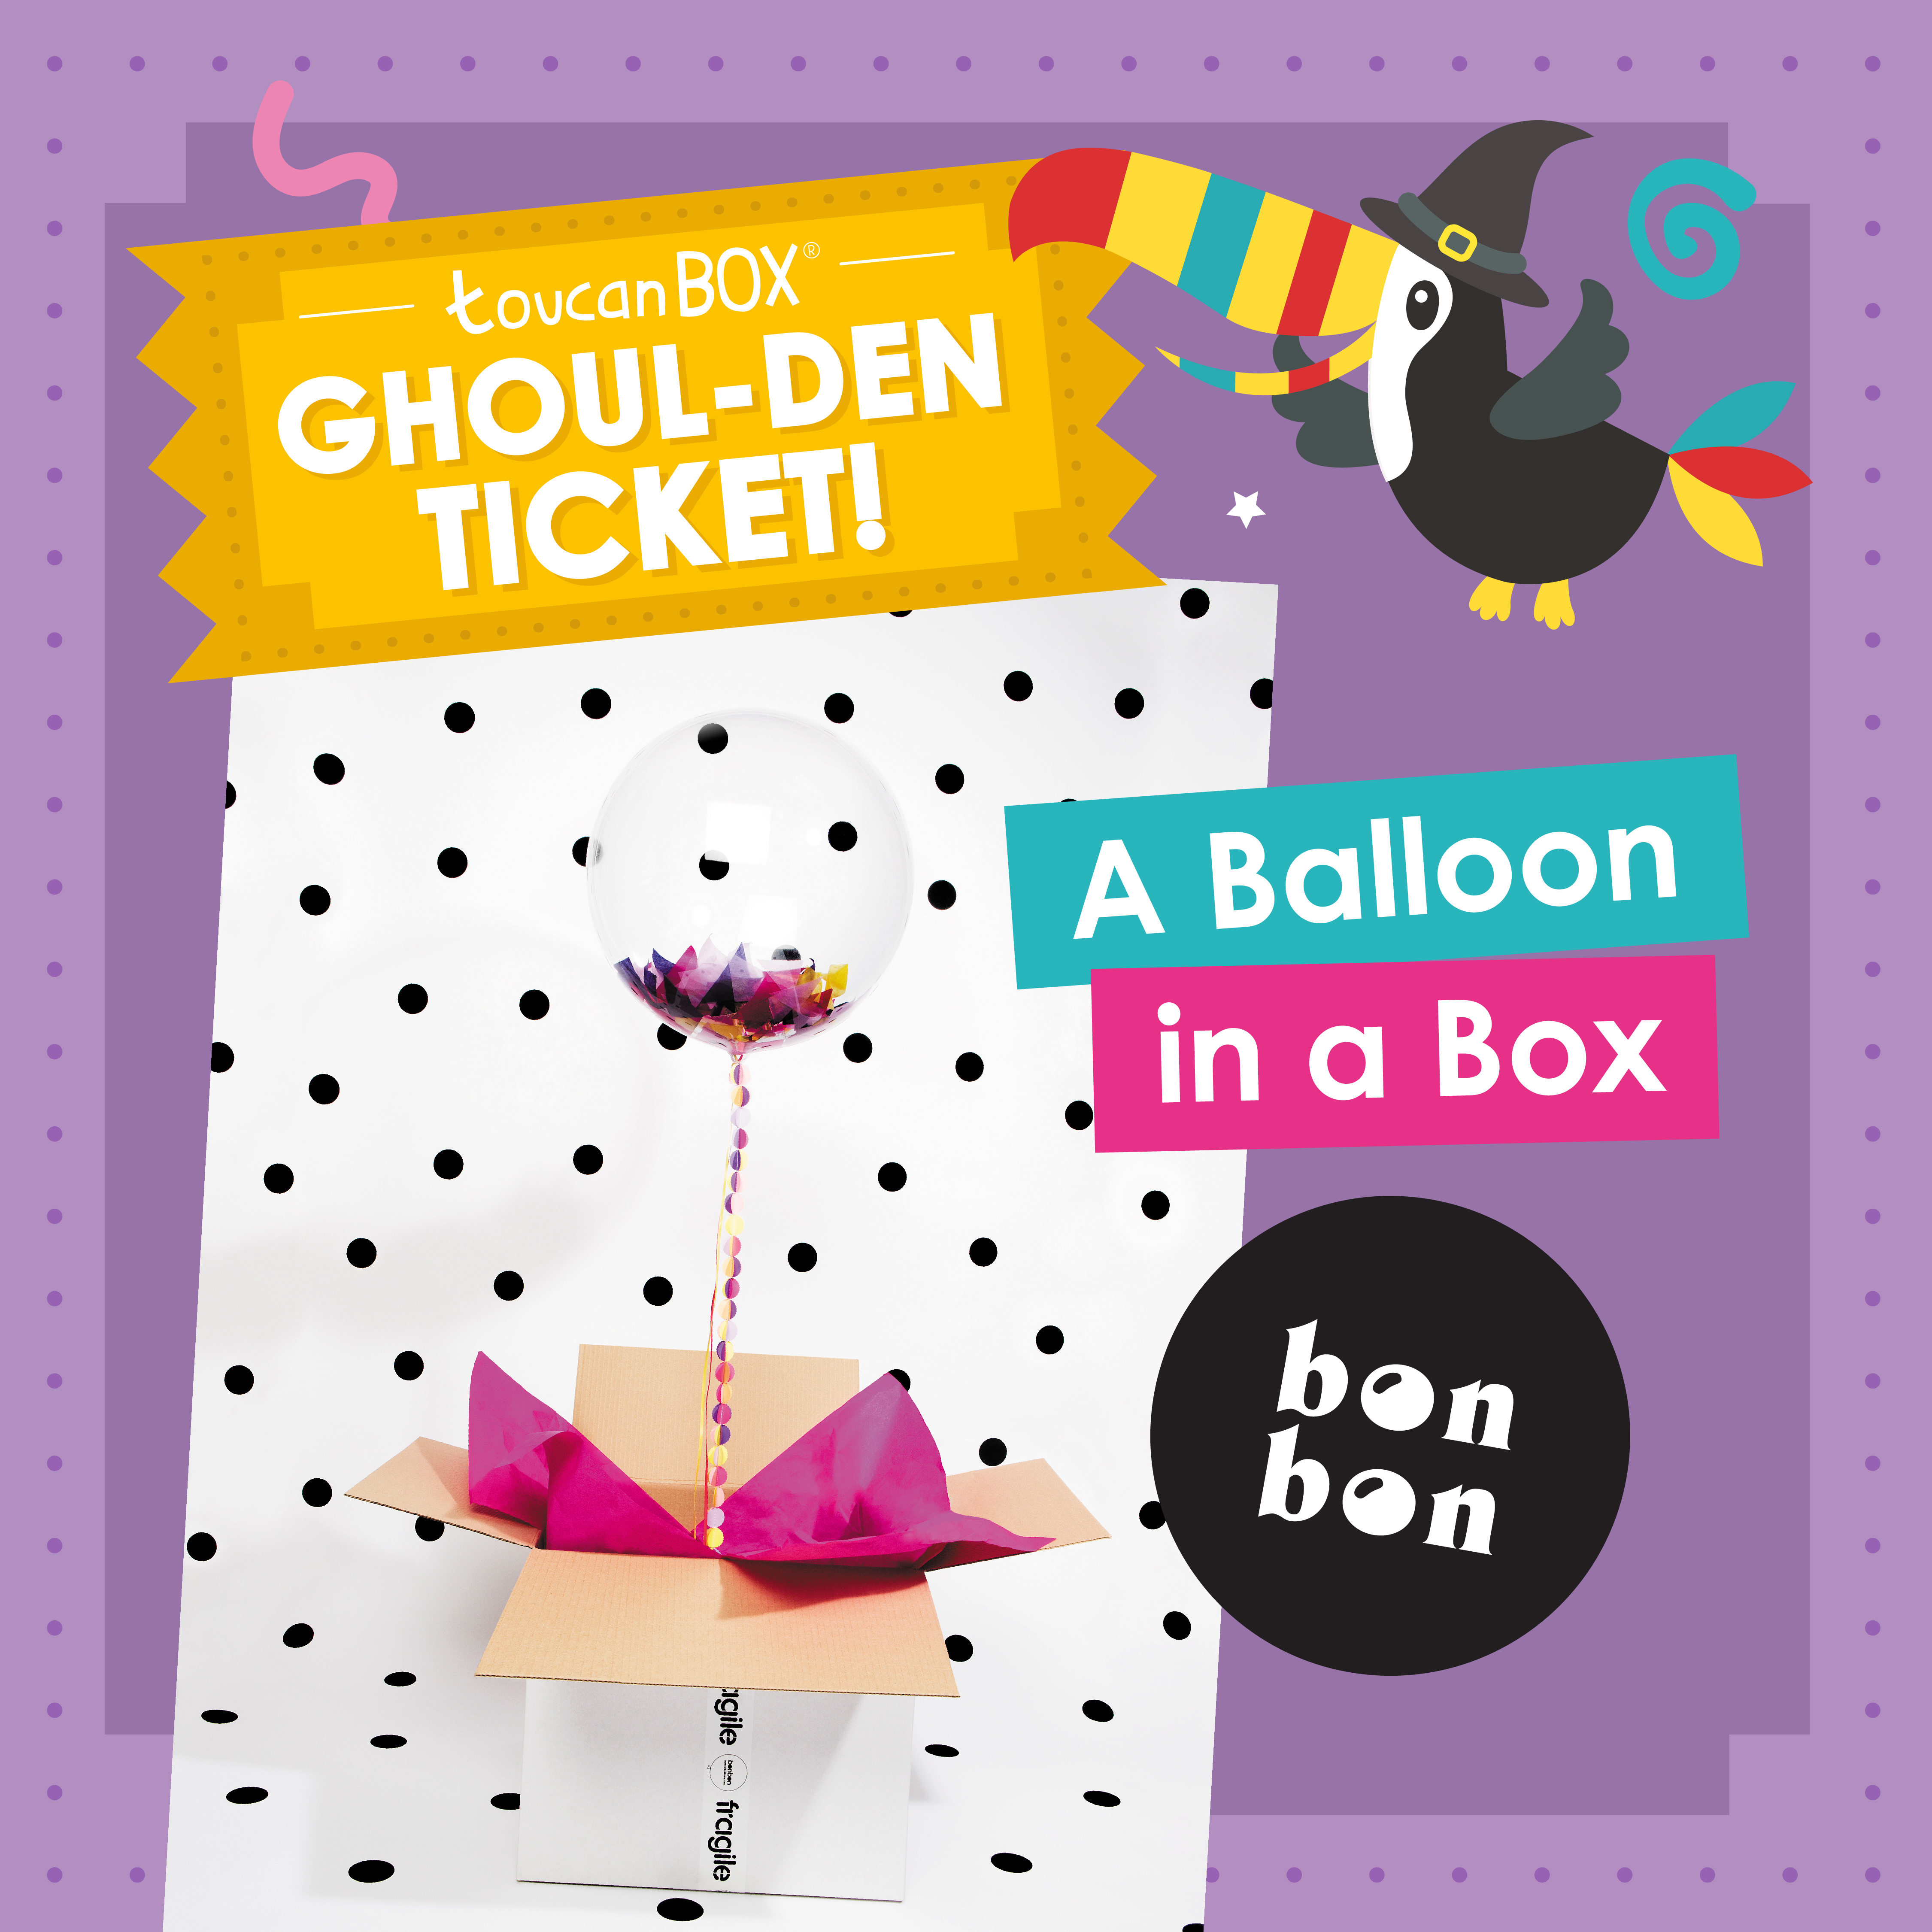 a-balloon-in-a-box-bon-bon-balloons